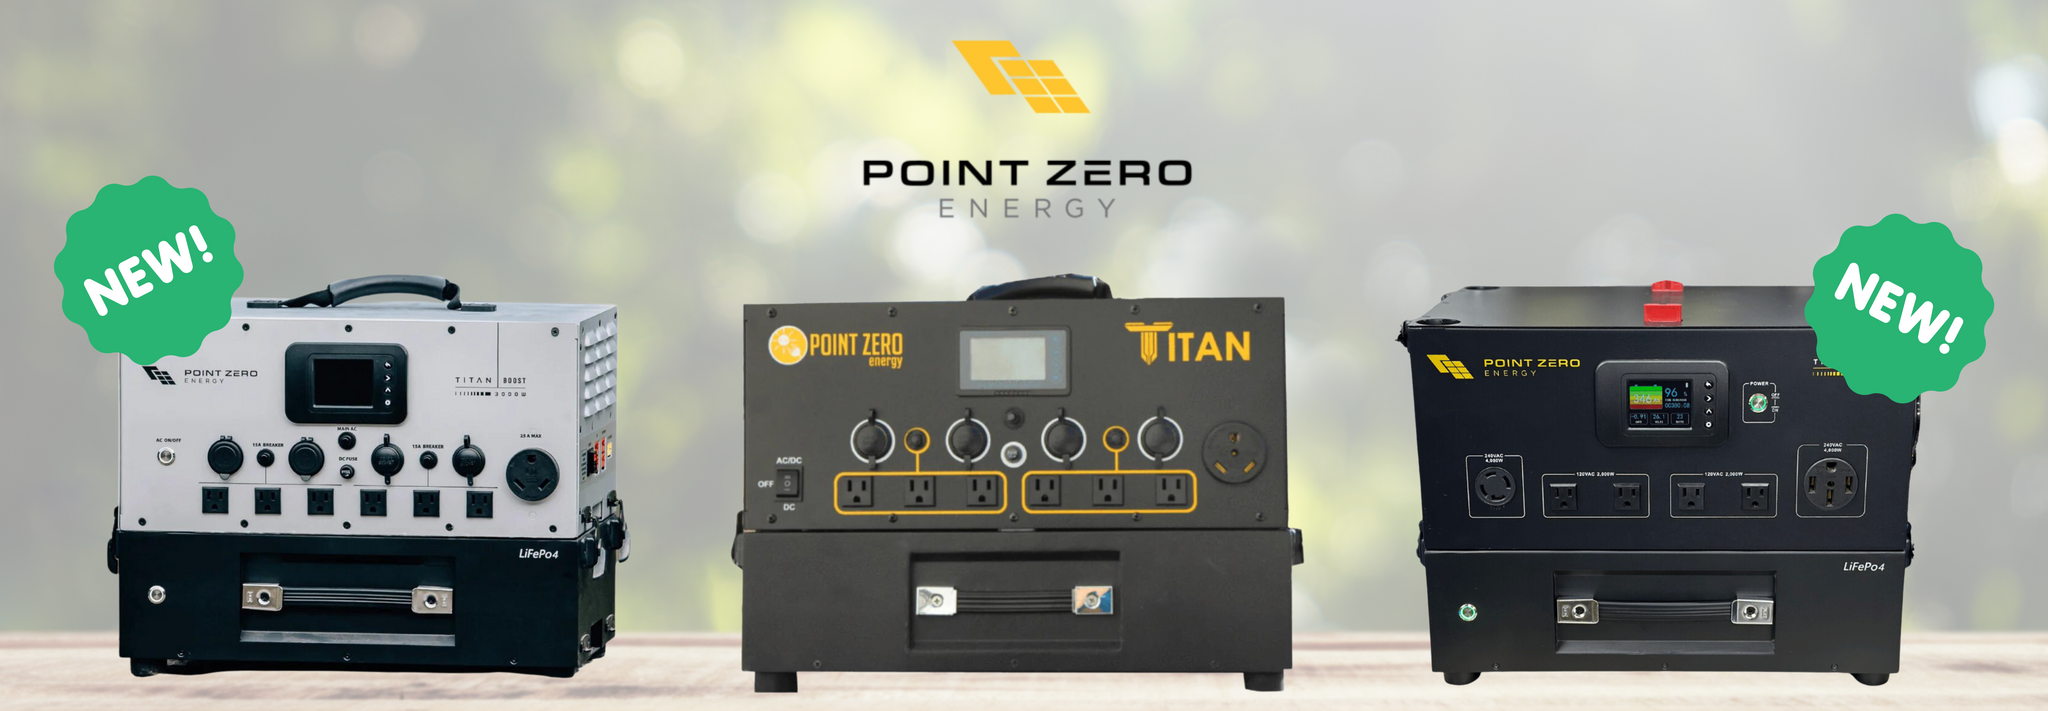 TITAN by Point Zero Energy